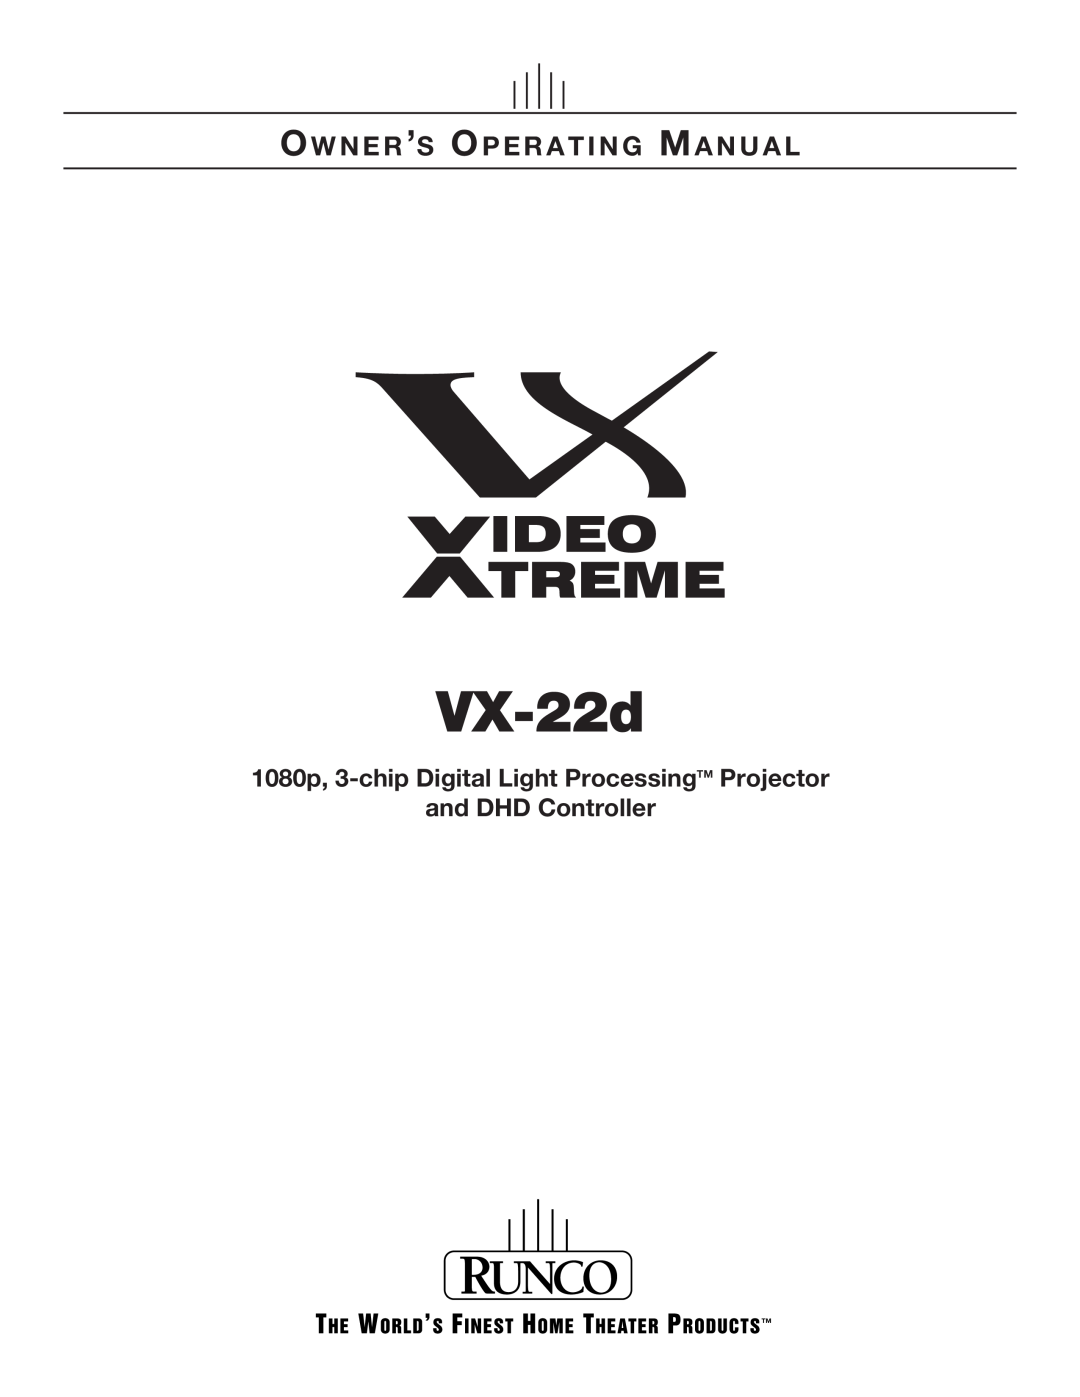 Runco VX-22D manual 1080p, 3-chip Digital Light ProcessingTM Projector and DHD Controller, VX-22d 